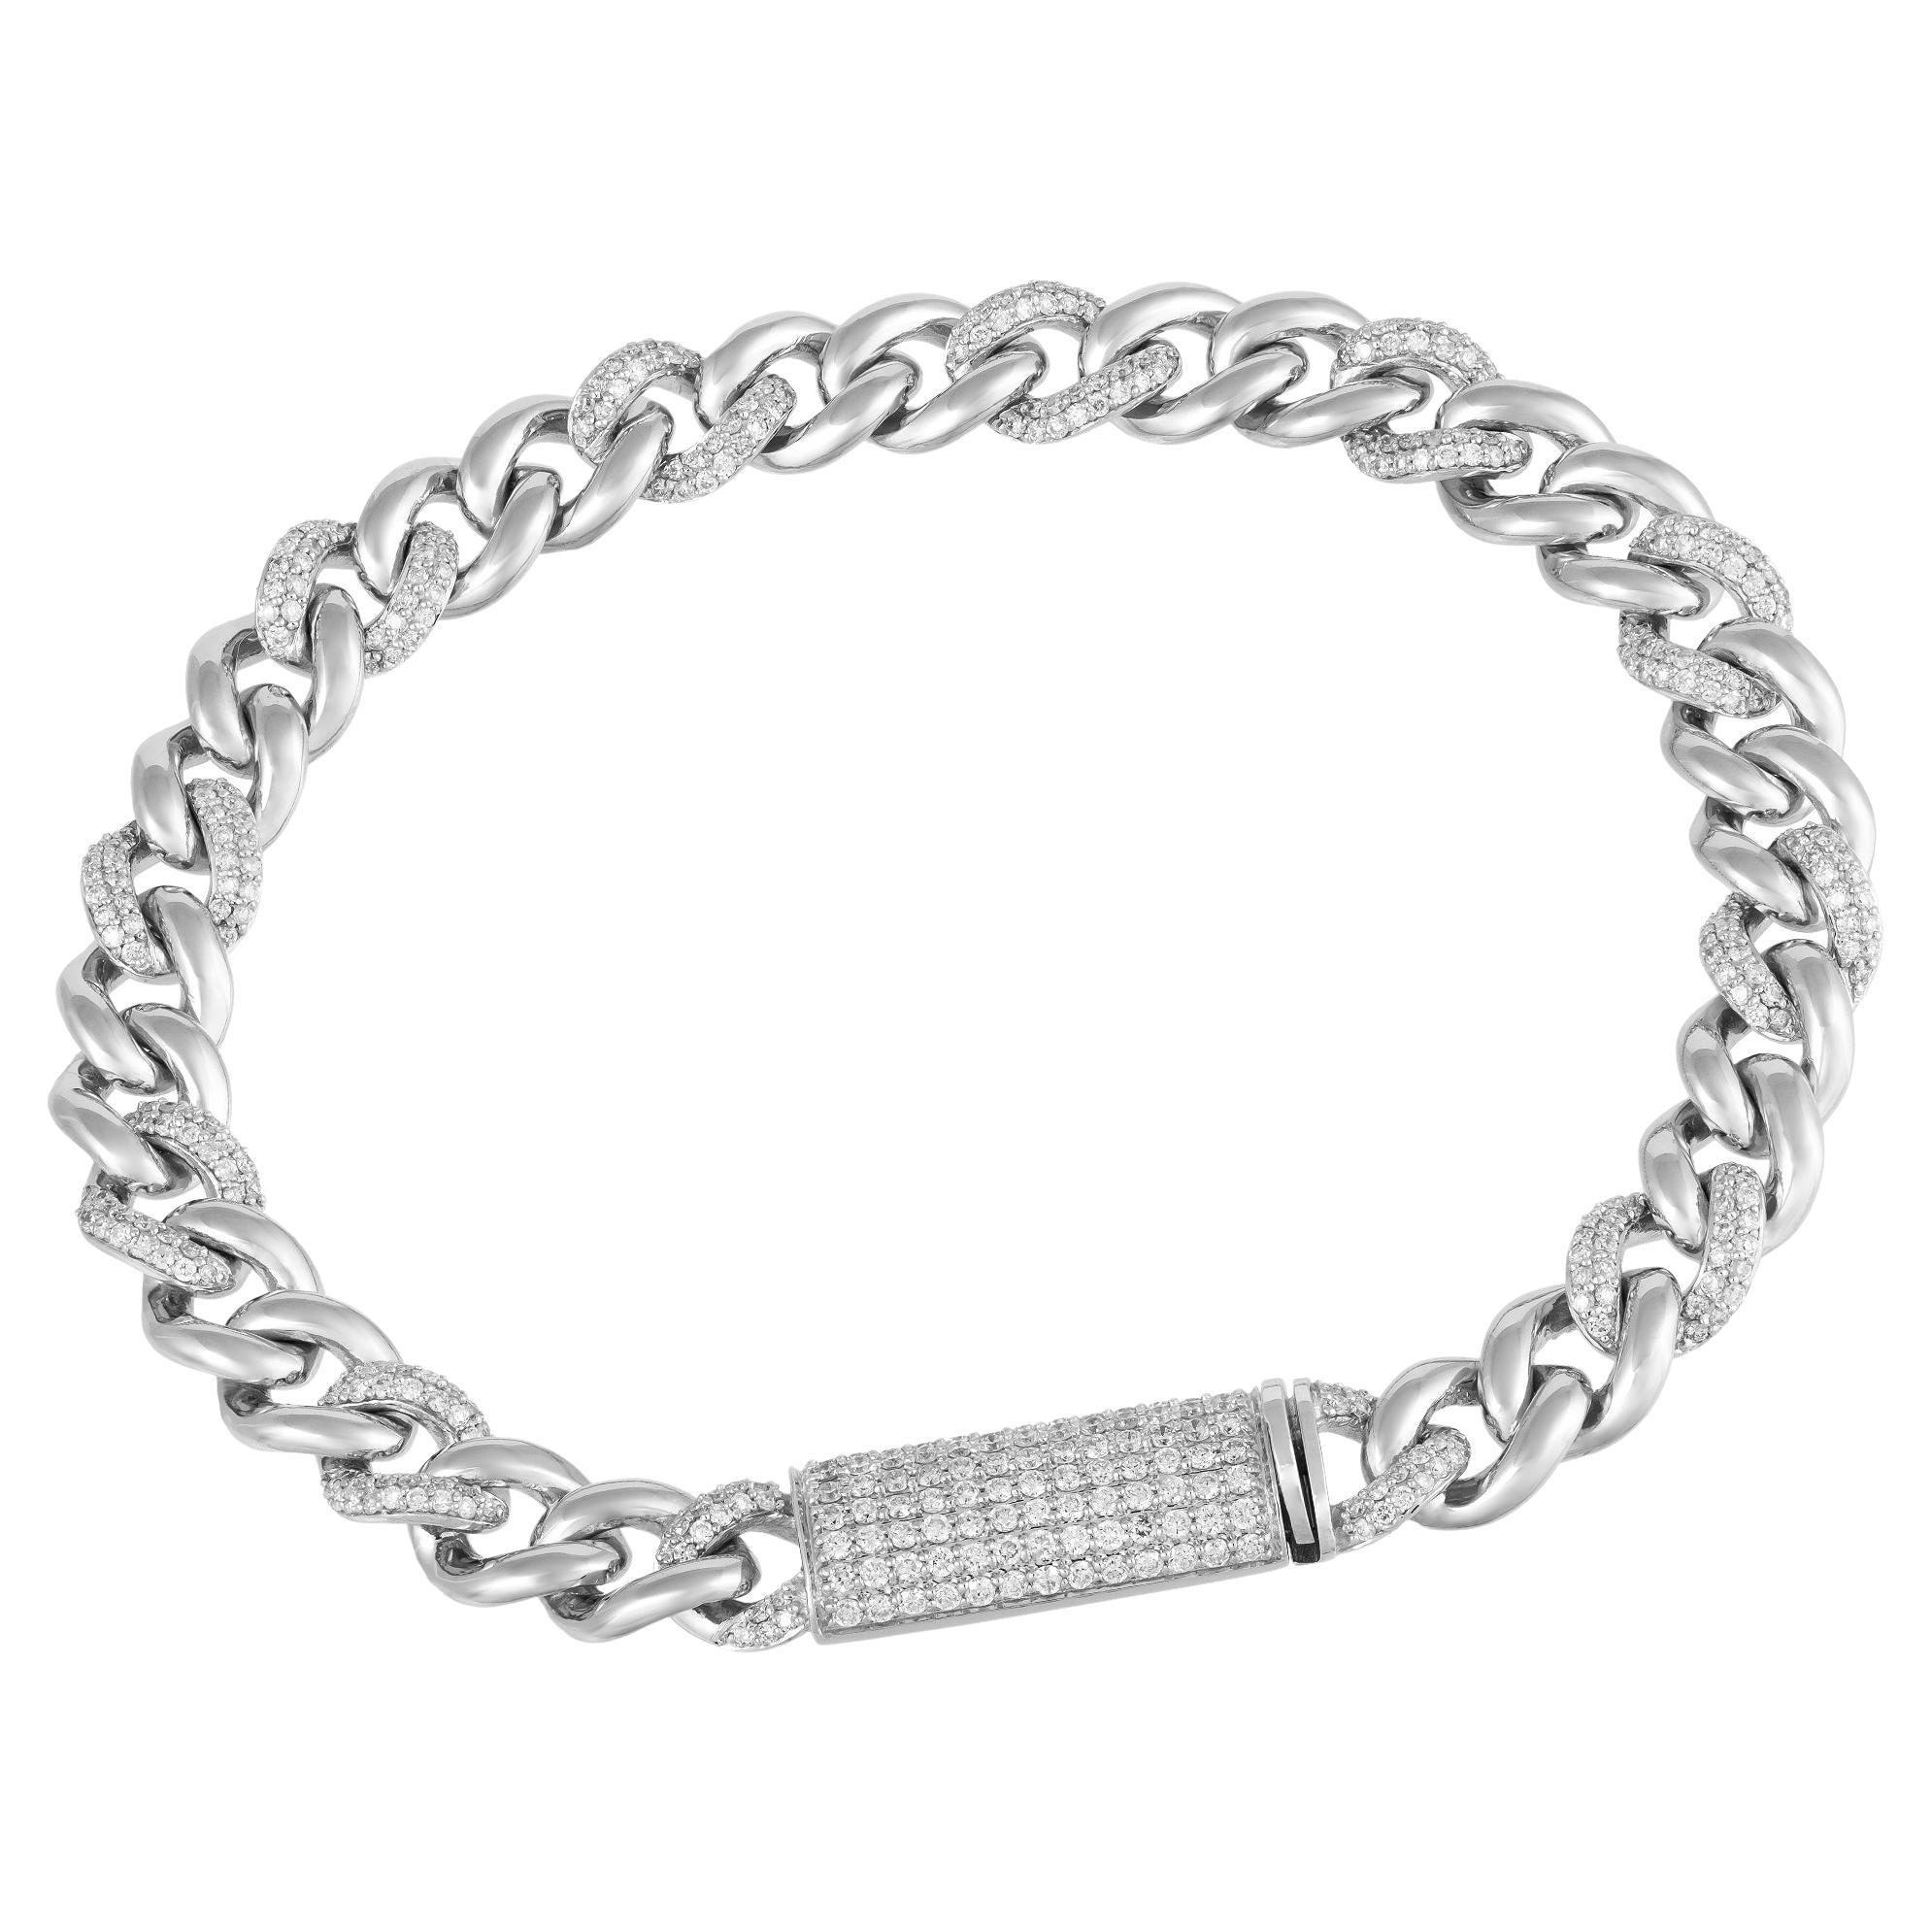 Chain White Gold 18K Bracelet Diamond for Her